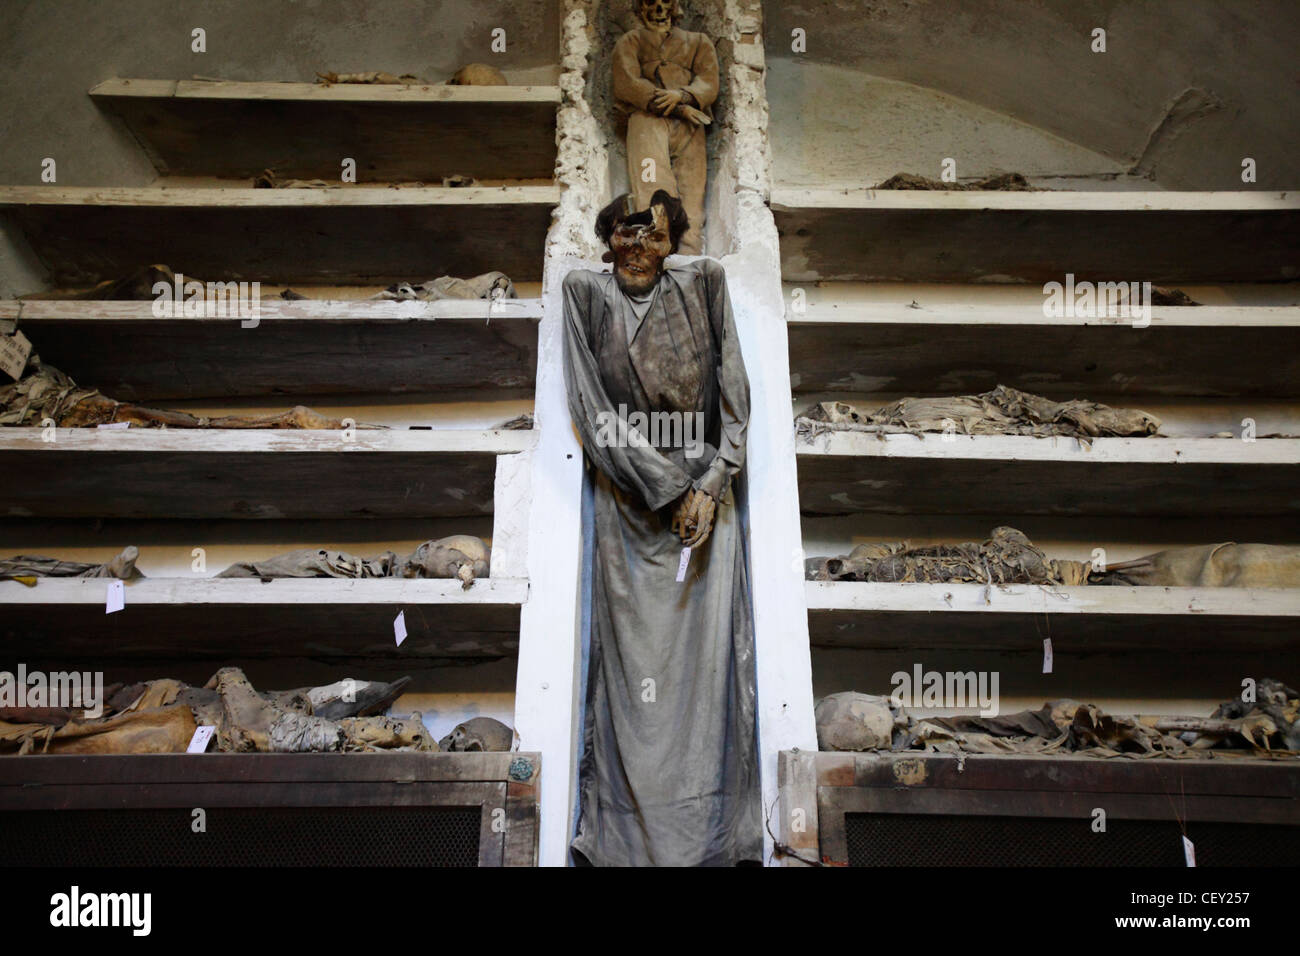 Capuchin catacombs of Palermo, Sicily, Italy Stock Photo